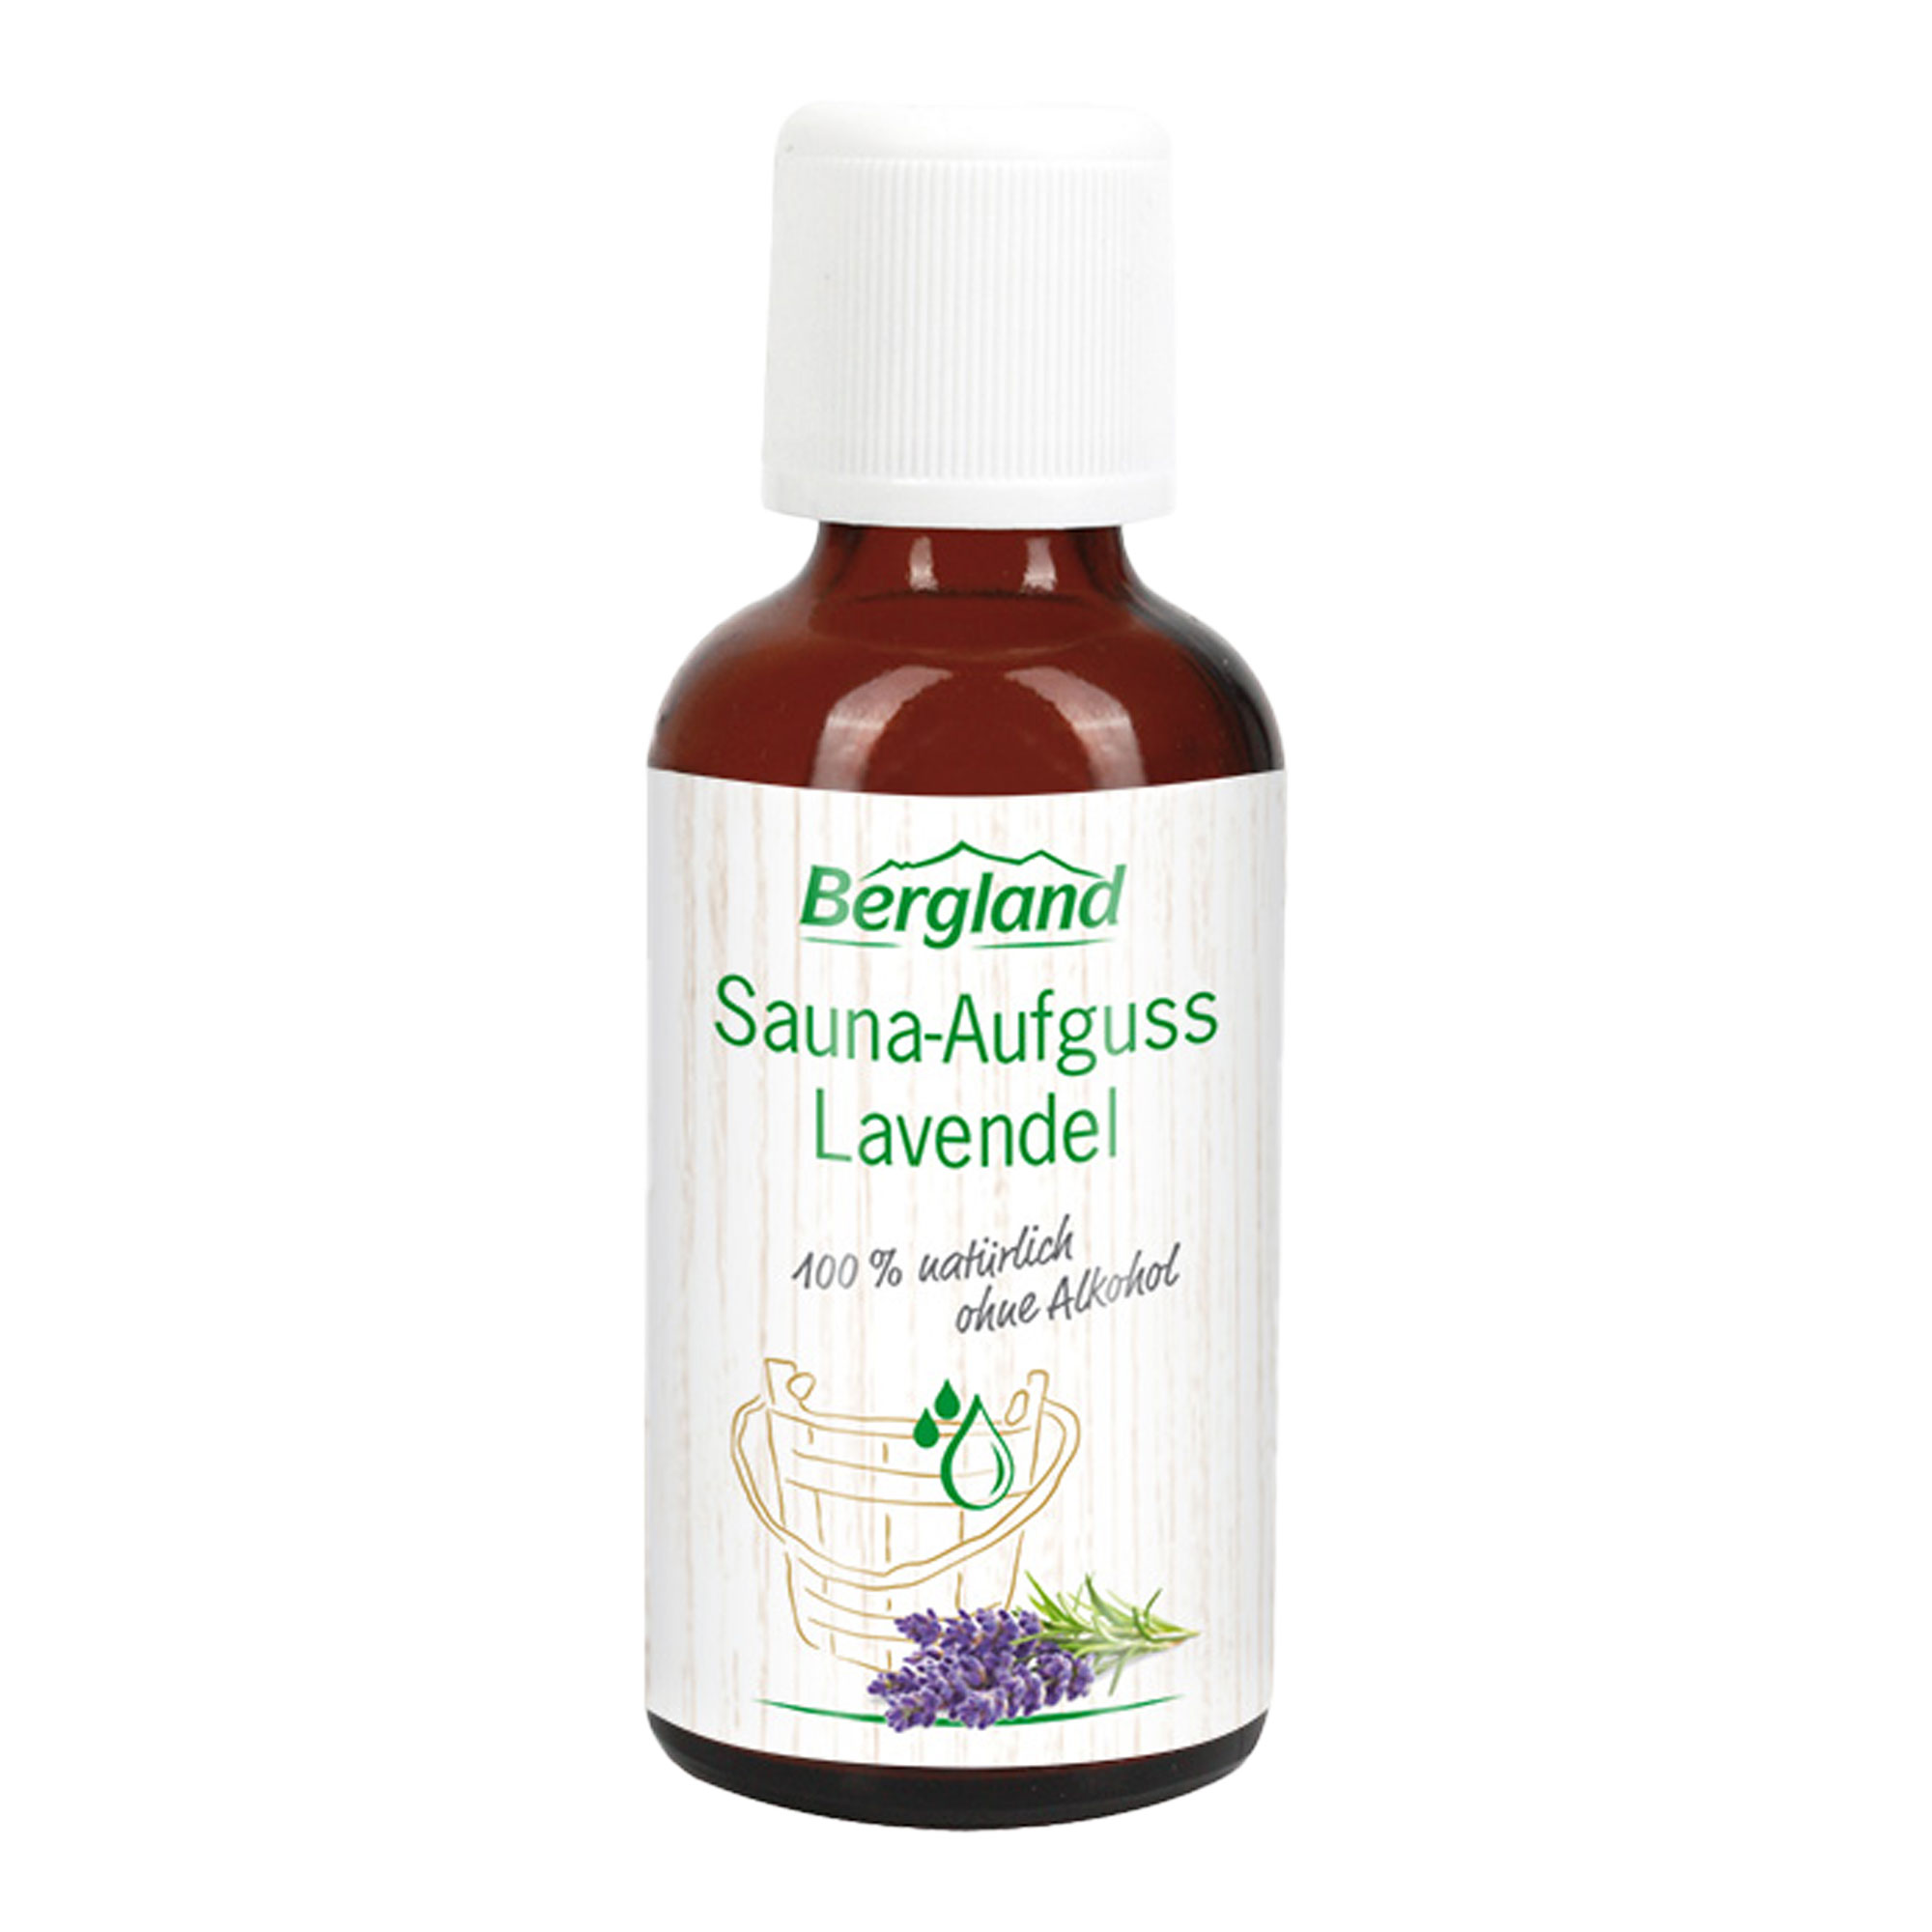 Ausgleichender Duft von Lavendel mit naturreinem ätherischen Öl.